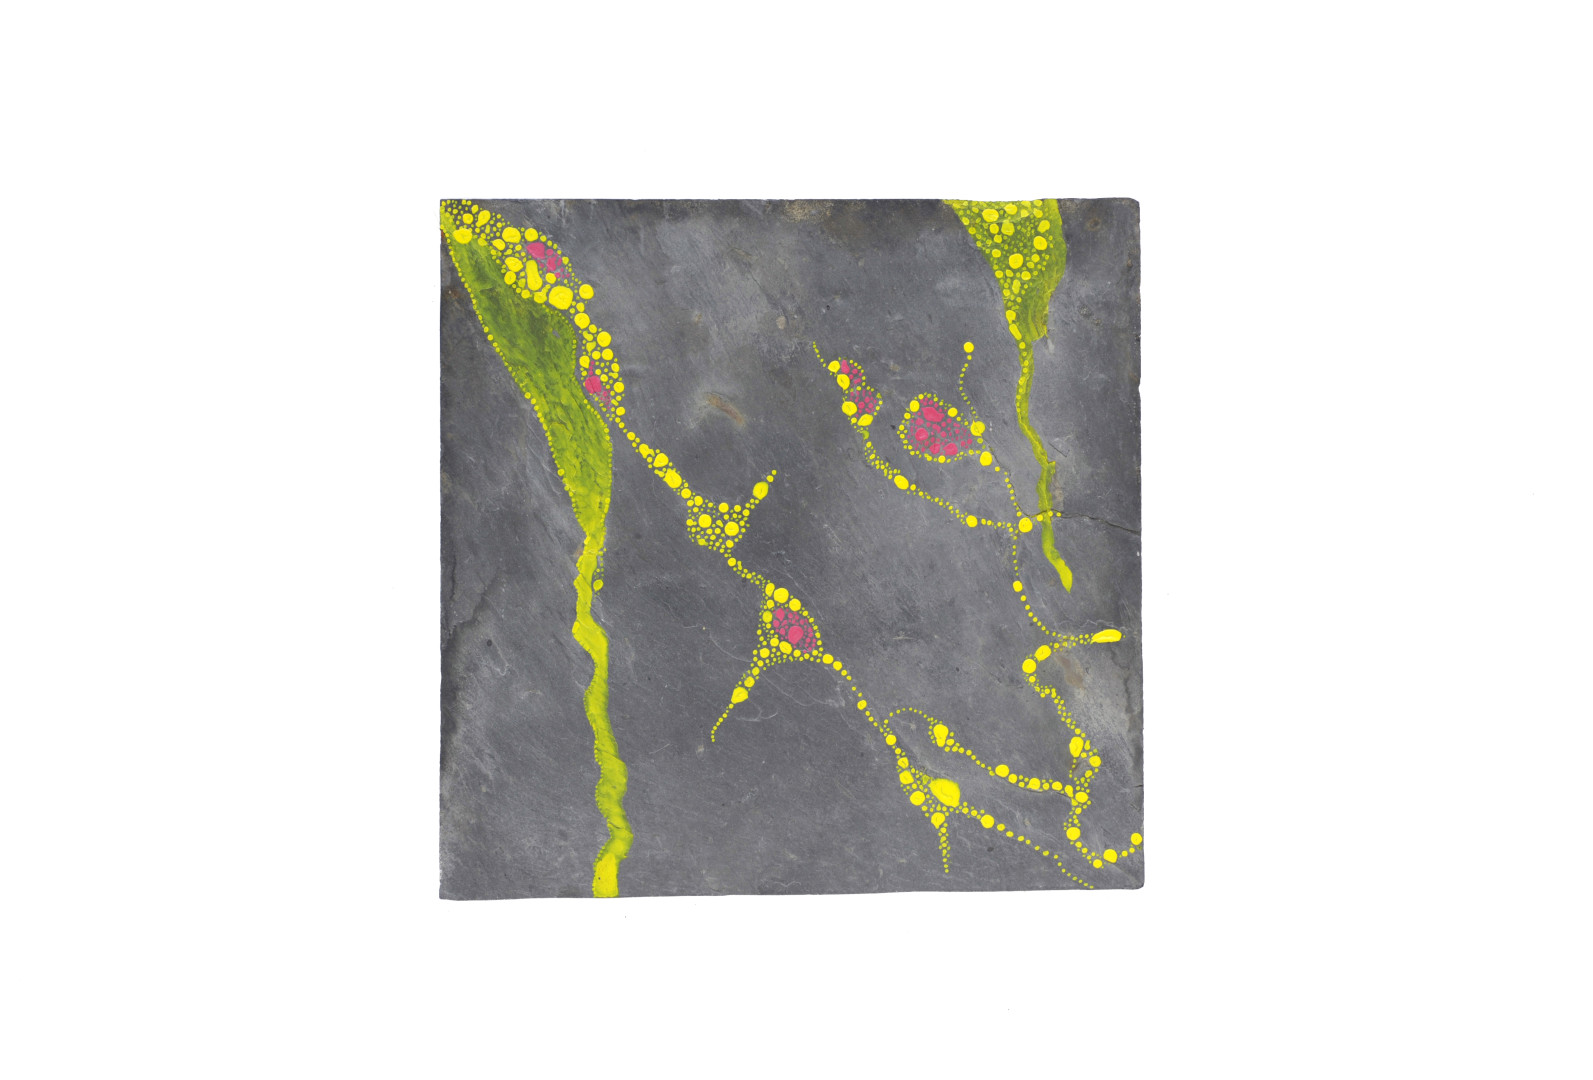 Formes végétales sous-marines souples de couleur jaune acide et rose vif peintes sur une ardoise carrée grise